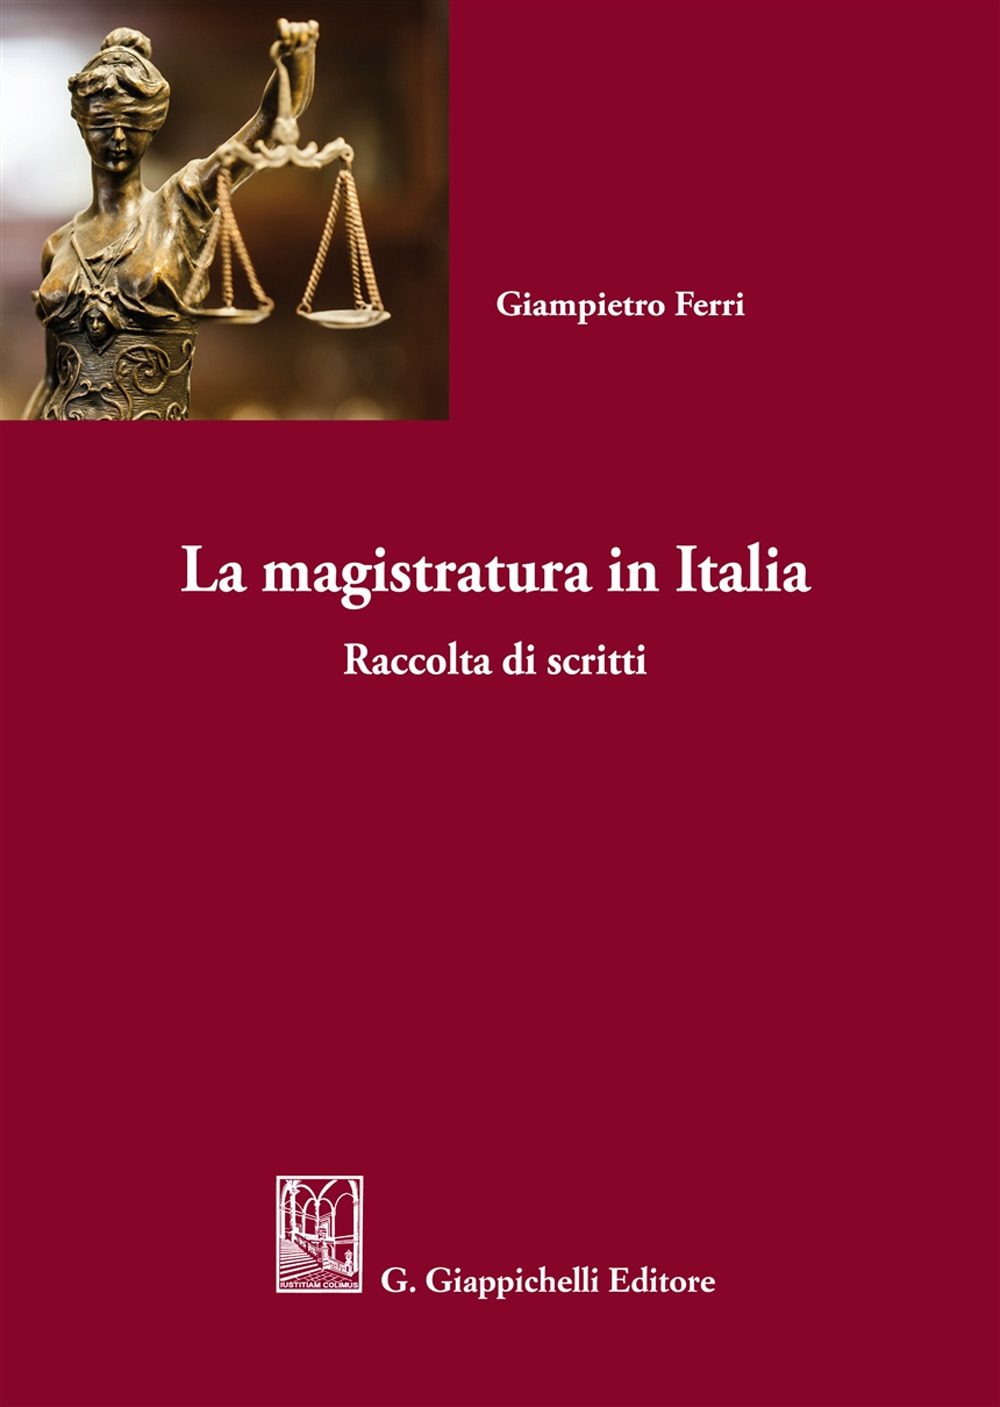 La magistratura in Italia. Raccolta di scritti